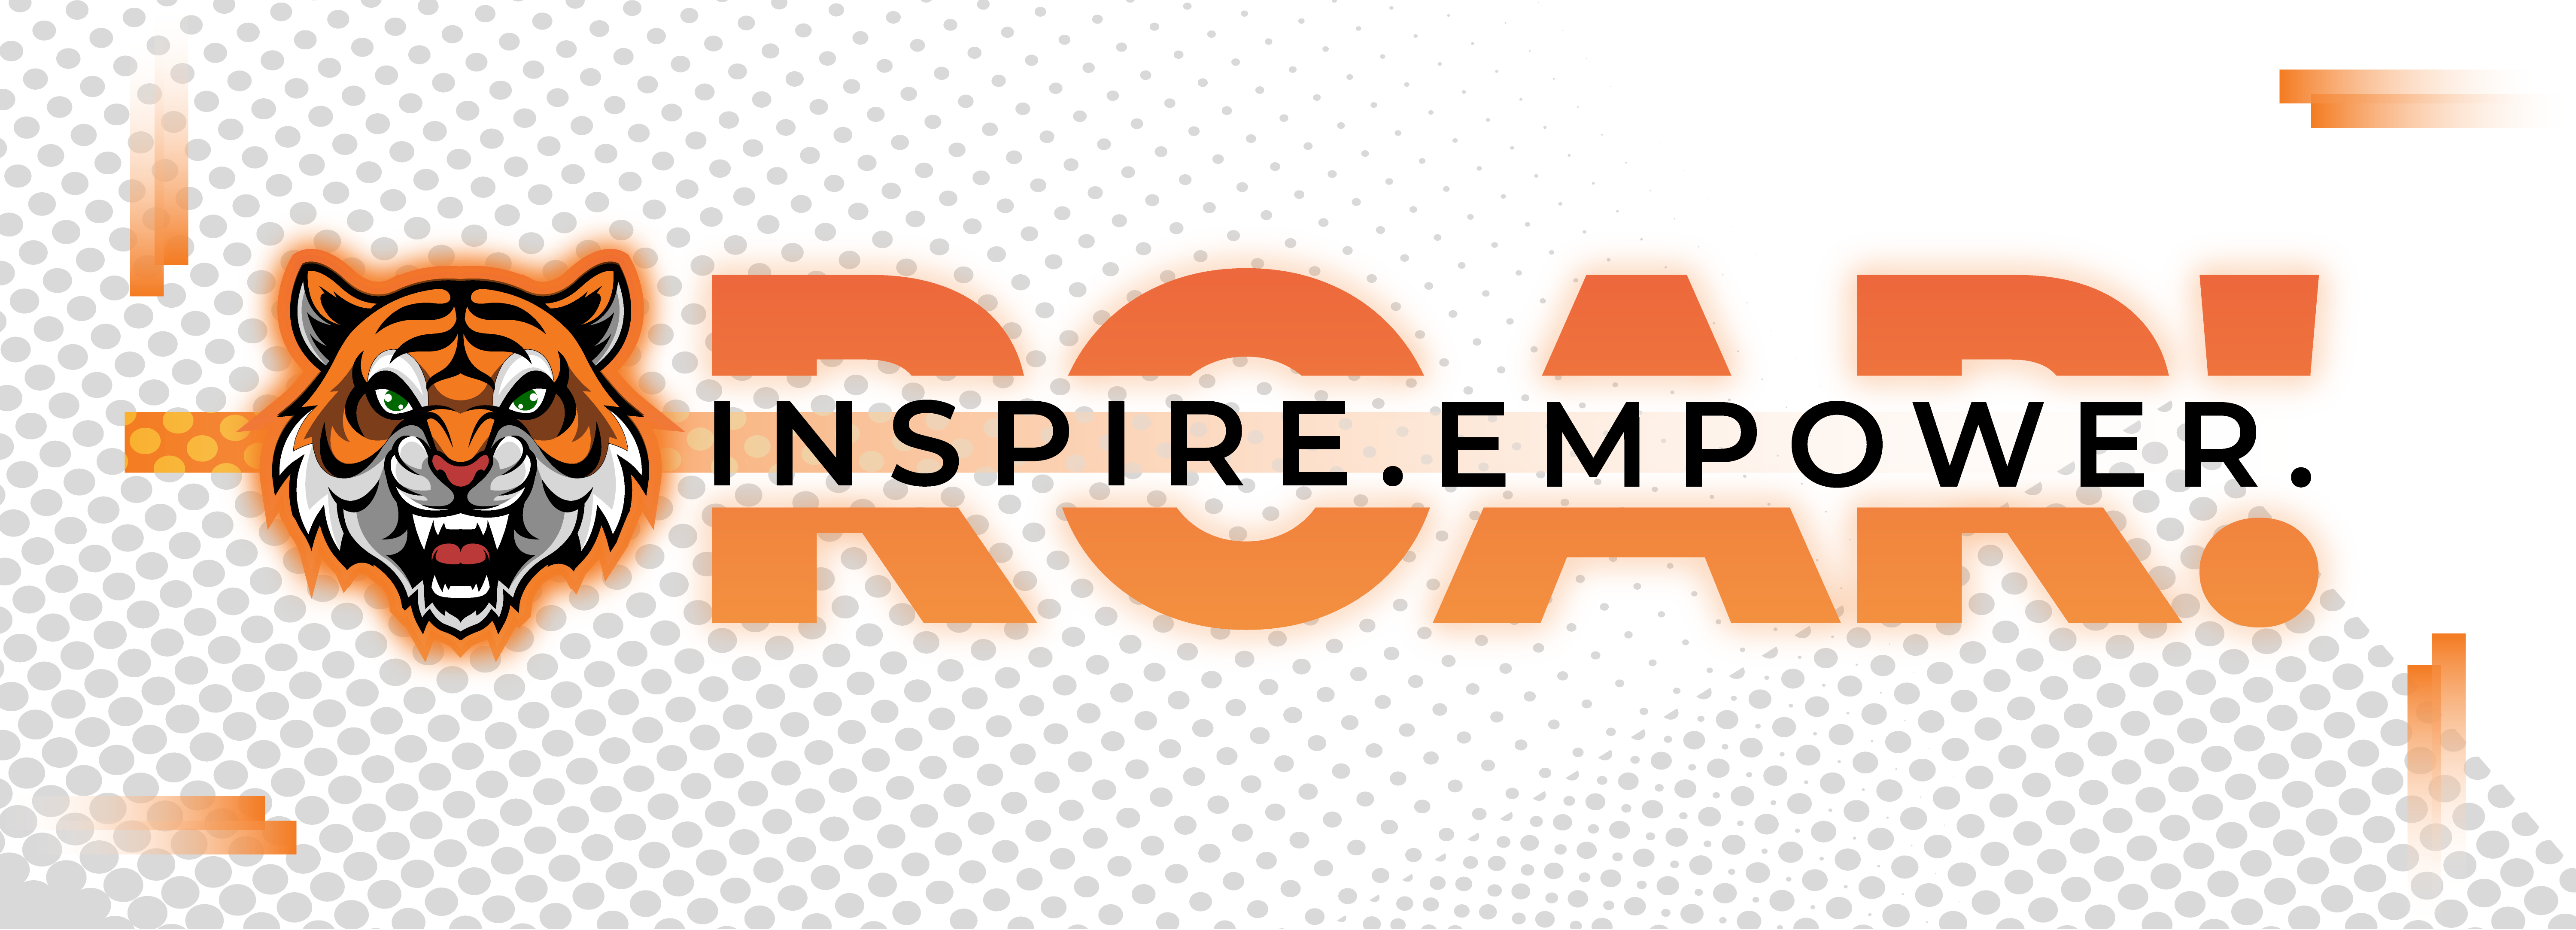 Inspire Empower Roar